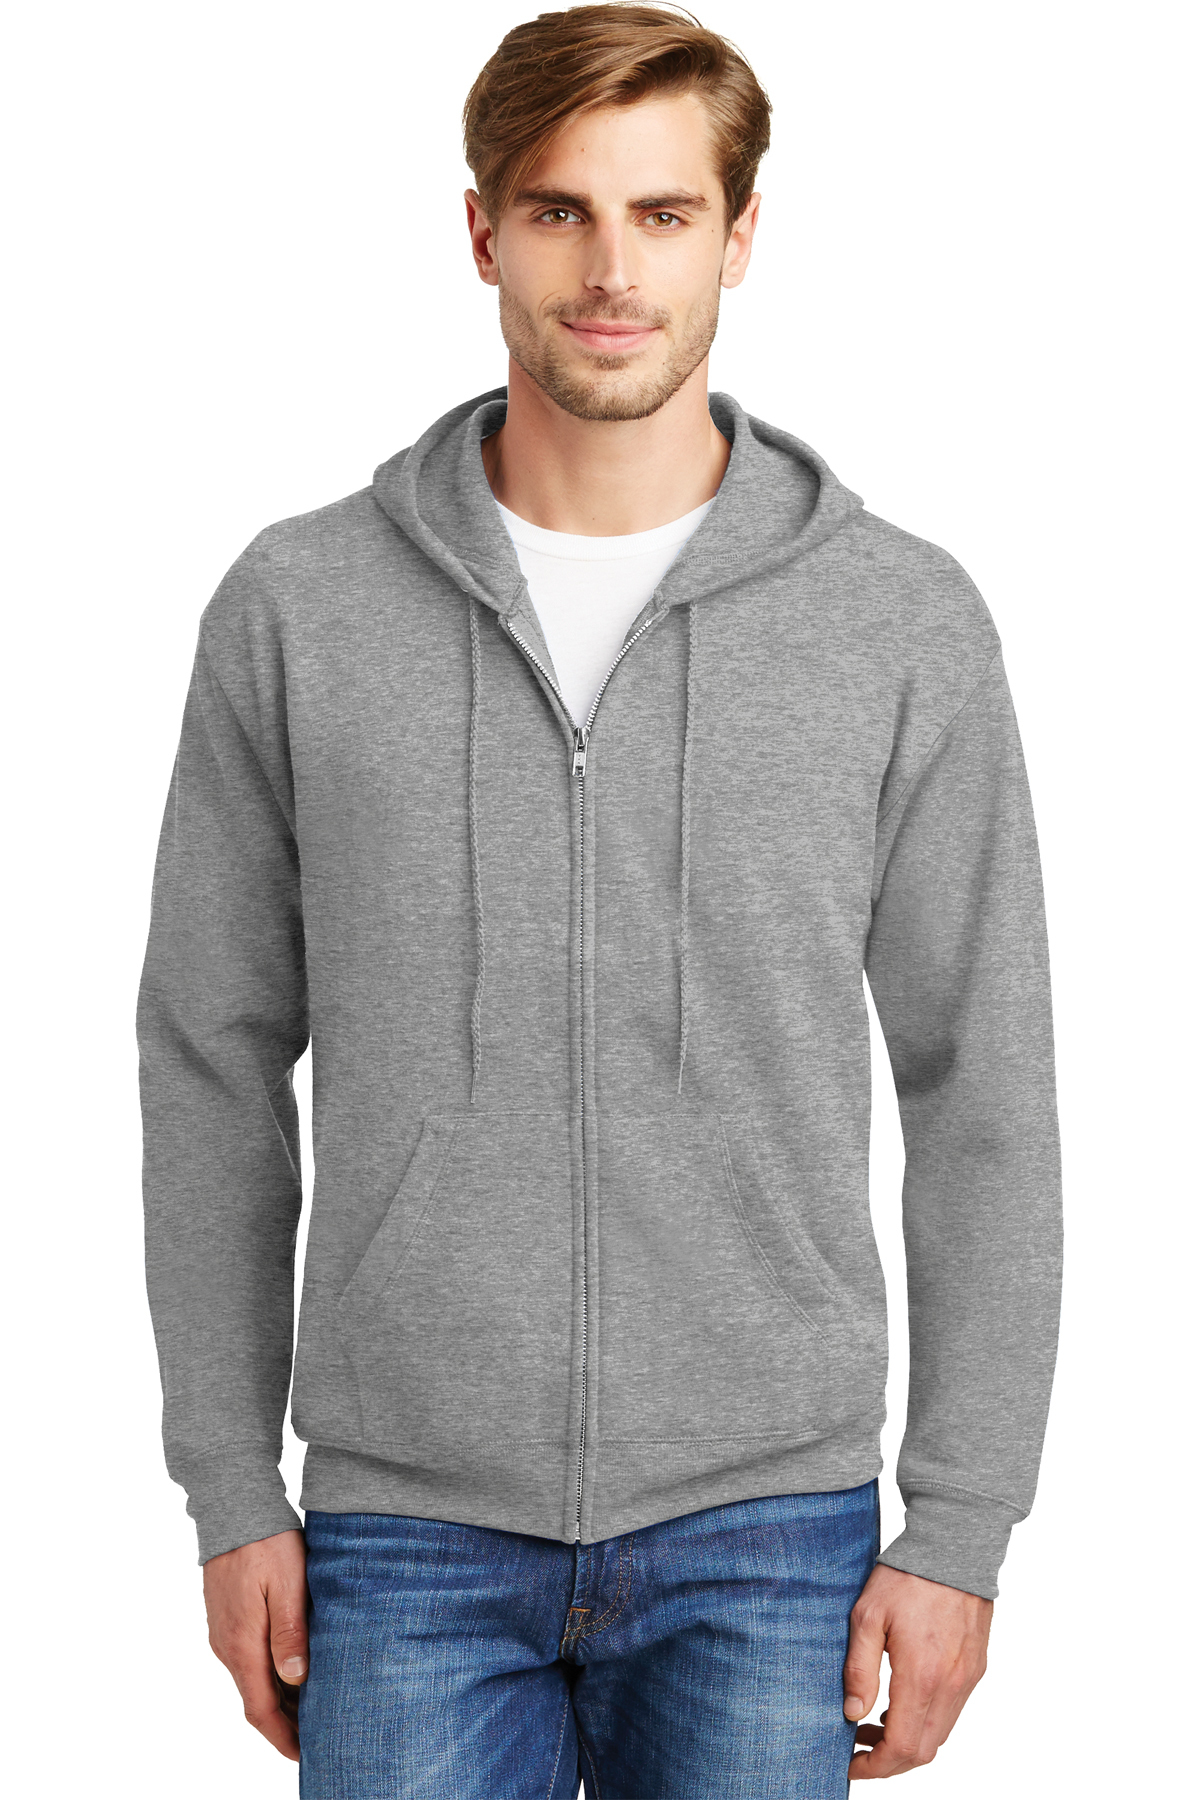 Hanes - EcoSmart Full-Zip Hooded Sweatshirt | Product | SanMar